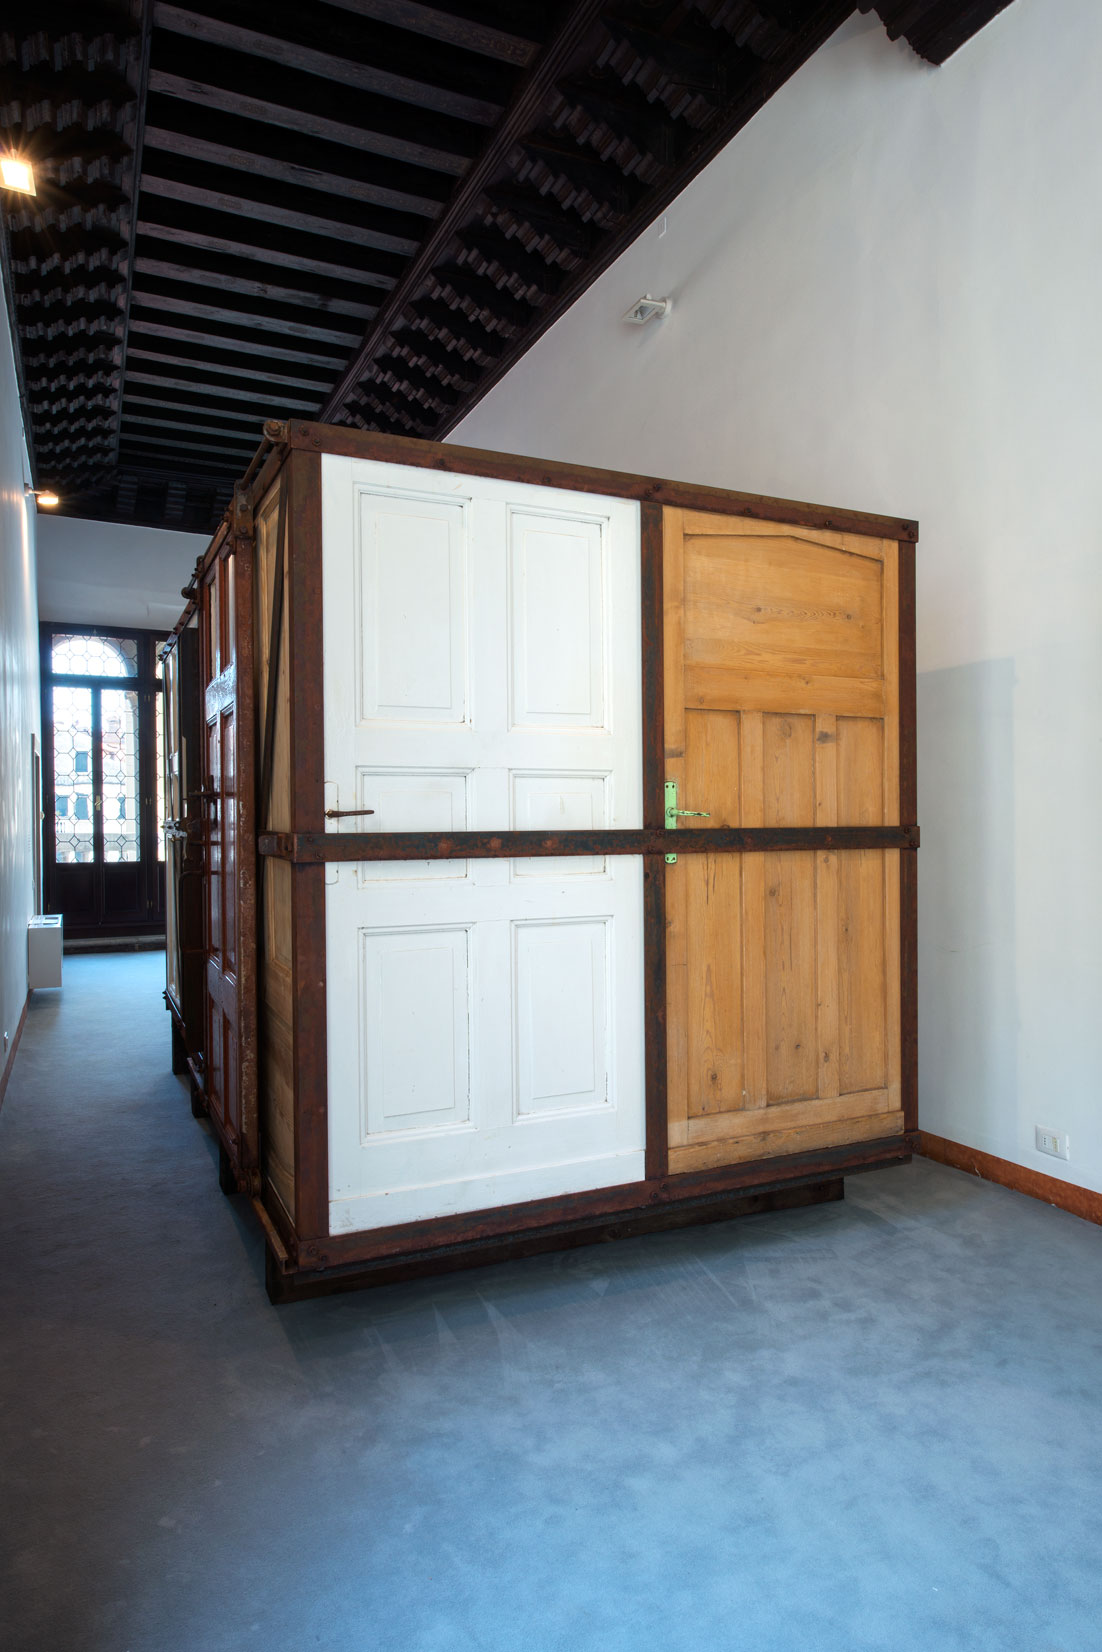 Realizacja Doroty Nieznalskiej, wystawa „Dispossession”, Biennale w Wenecji, 2015 (źródło: materiały prasowe organizatora)